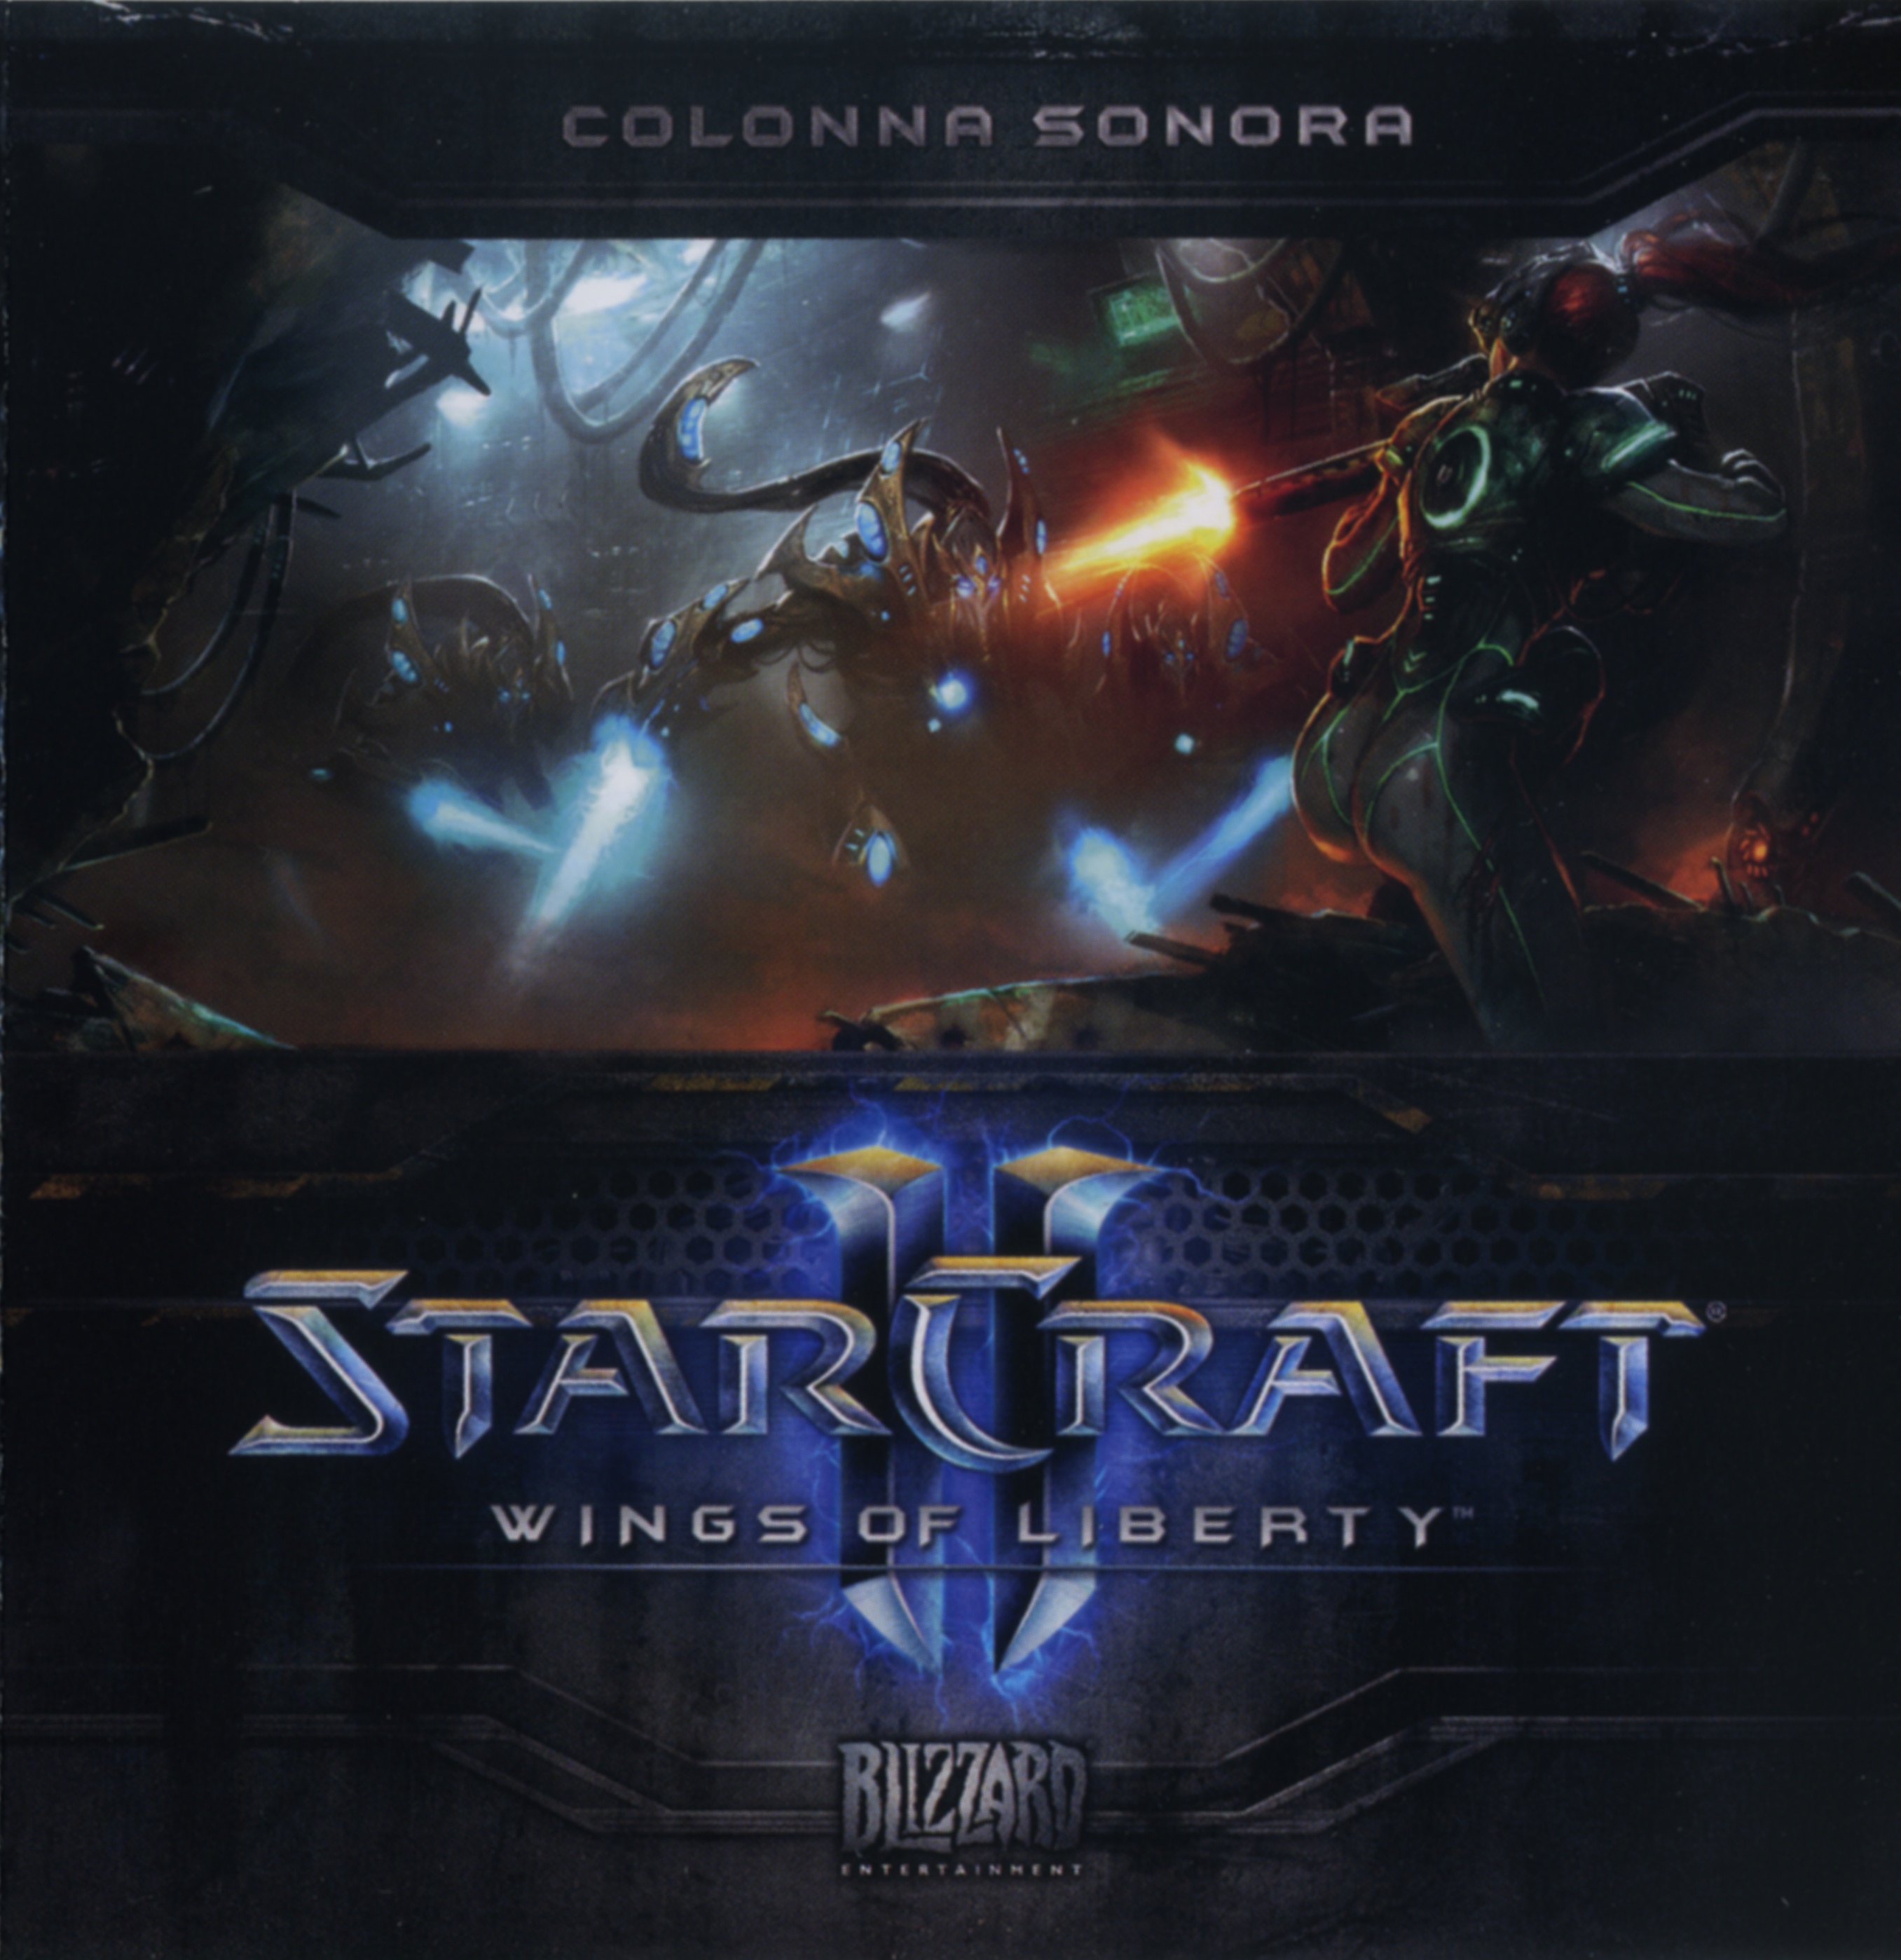 starcraft 2 full game download free